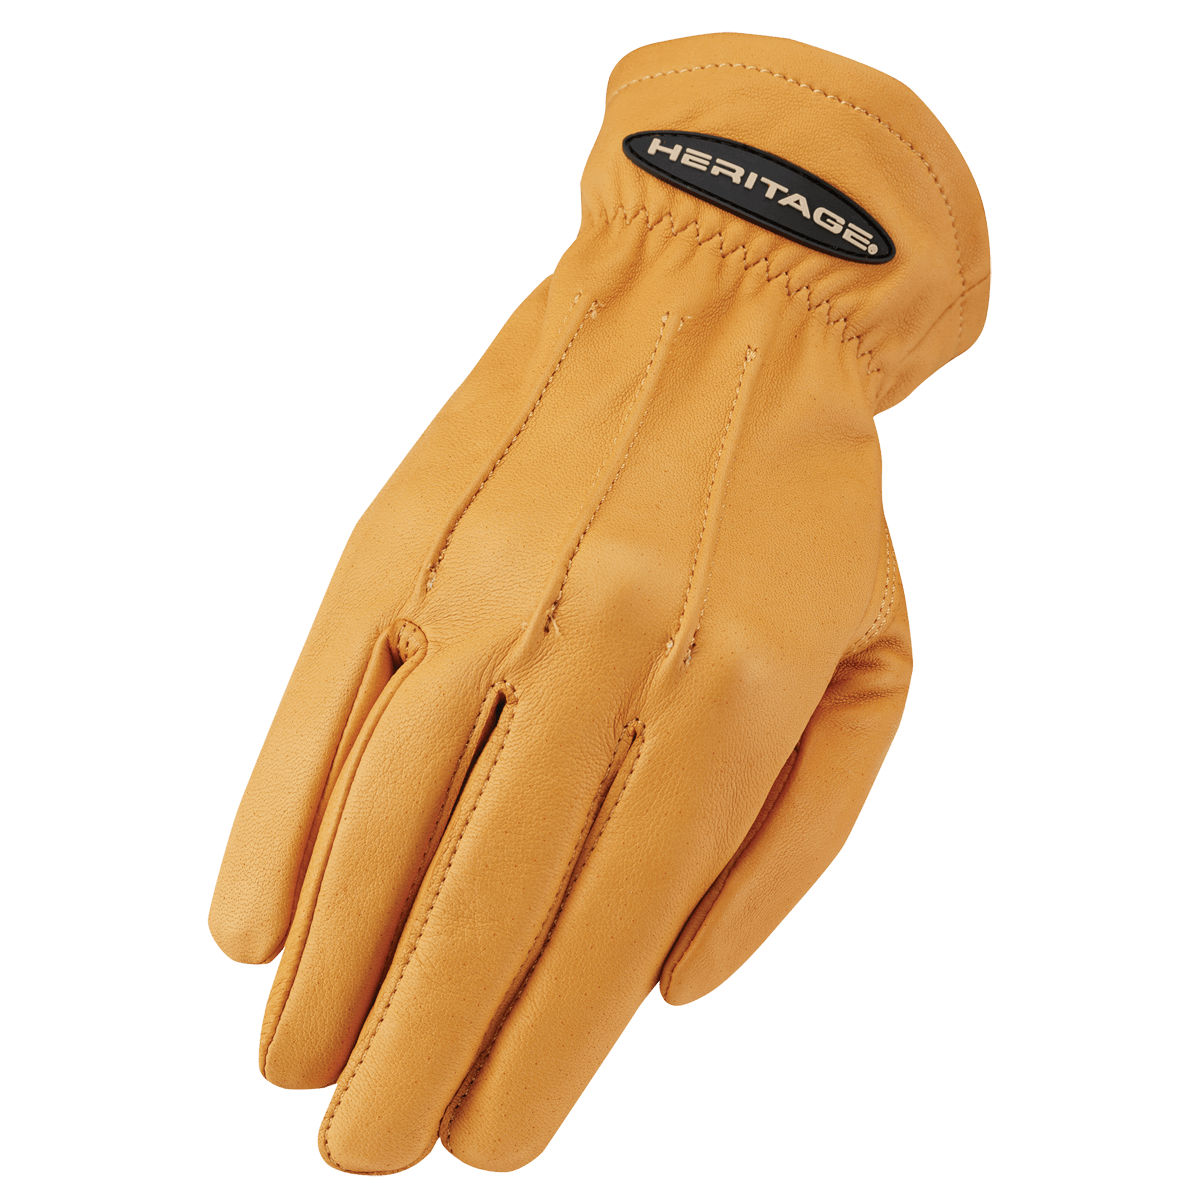 Heritage Winter Trail Glove